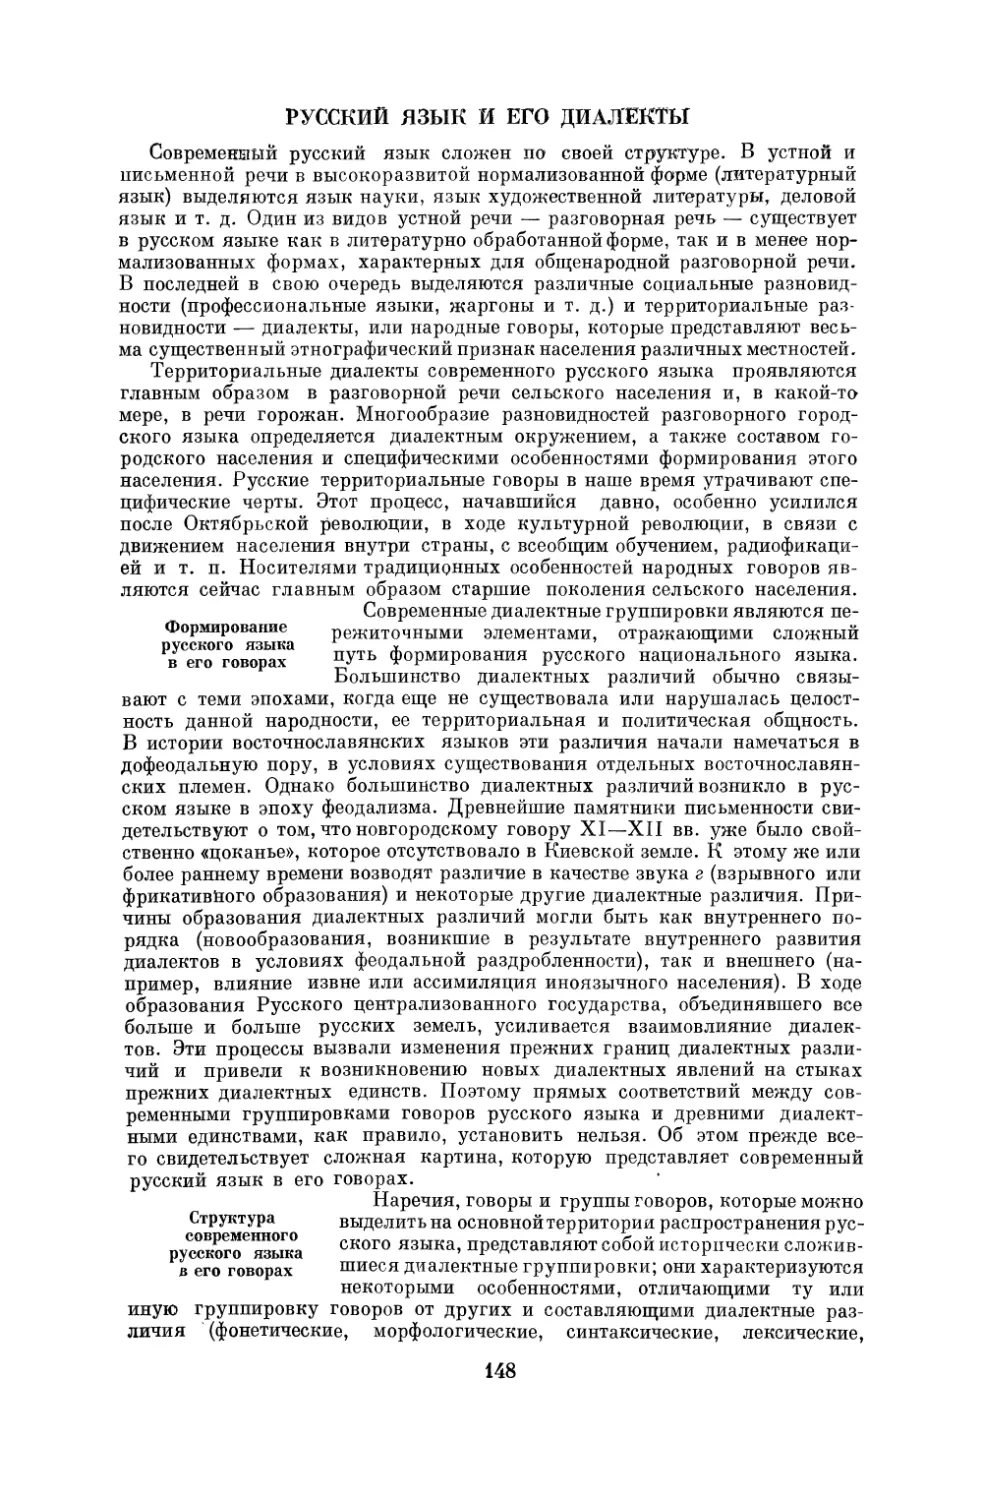 Русский язык и его диалекты
Структура современного русского языка в его говорах